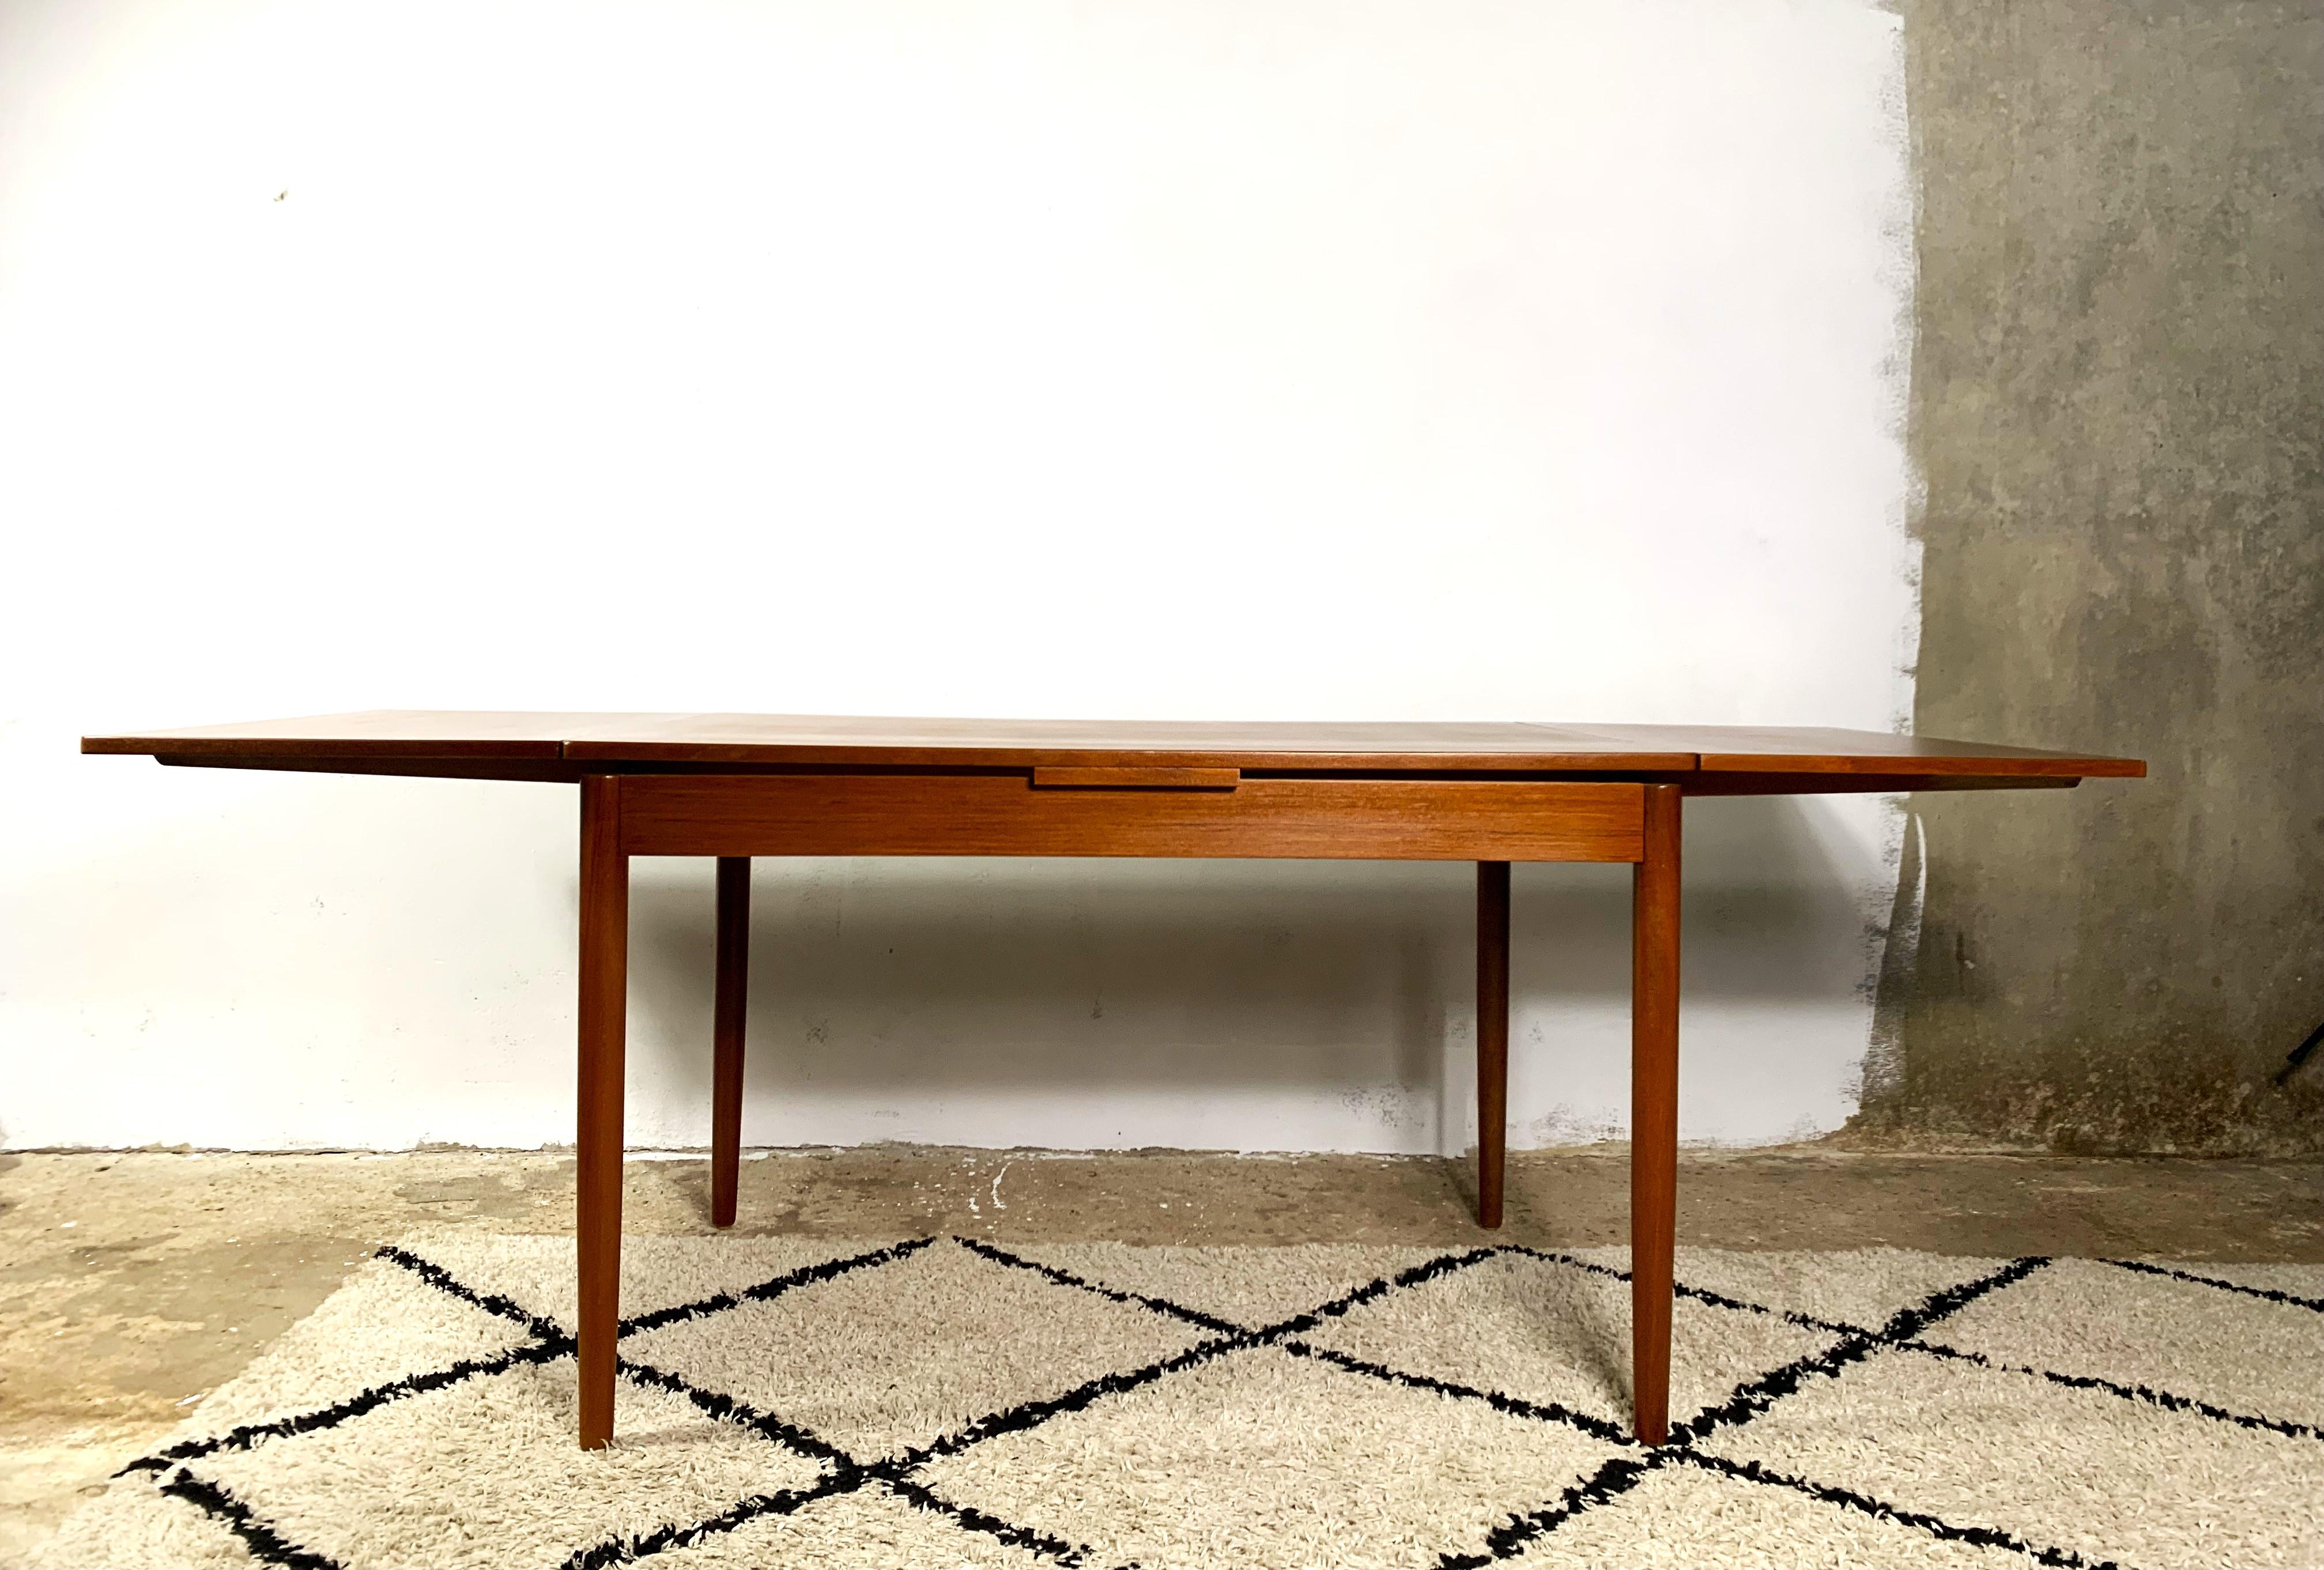 Table de salle à manger en teck du Danemark, fabriquée dans les années 1960/70. La version de base peut accueillir 6 personnes, la version étendue peut accueillir 8 voire 10 personnes. Le montage et le démontage de la table sont faciles. Le plateau